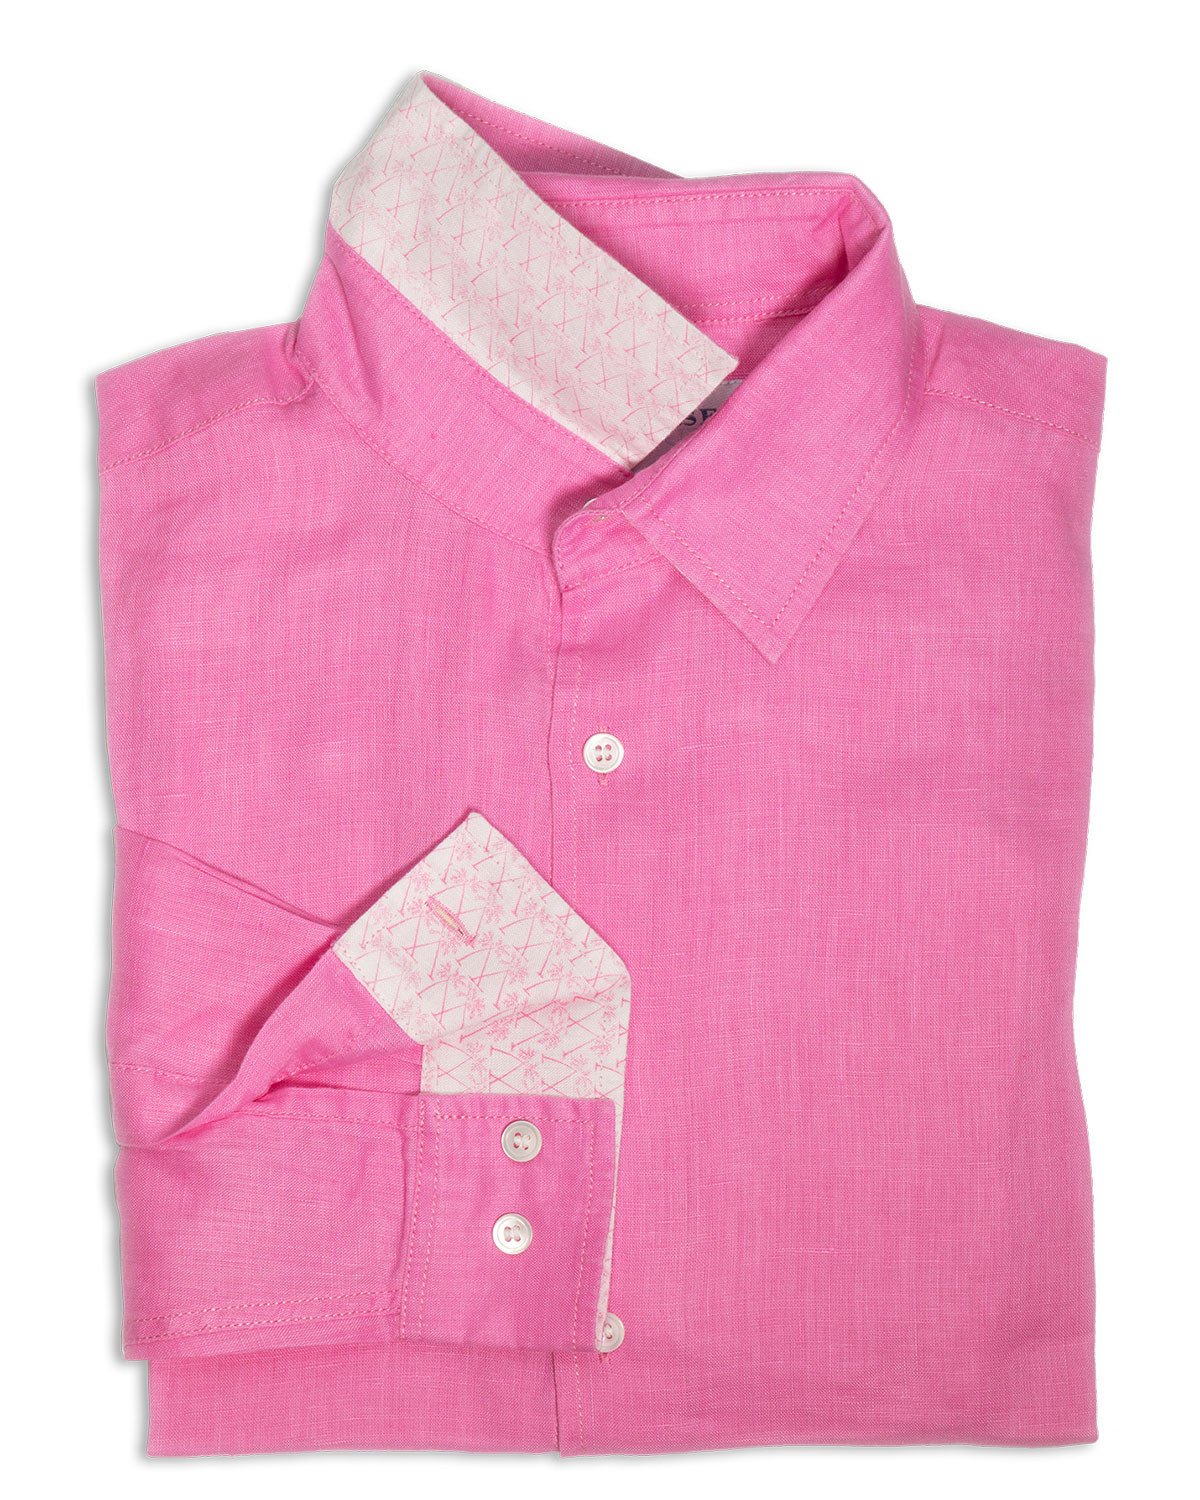 Linen shirt pale pink